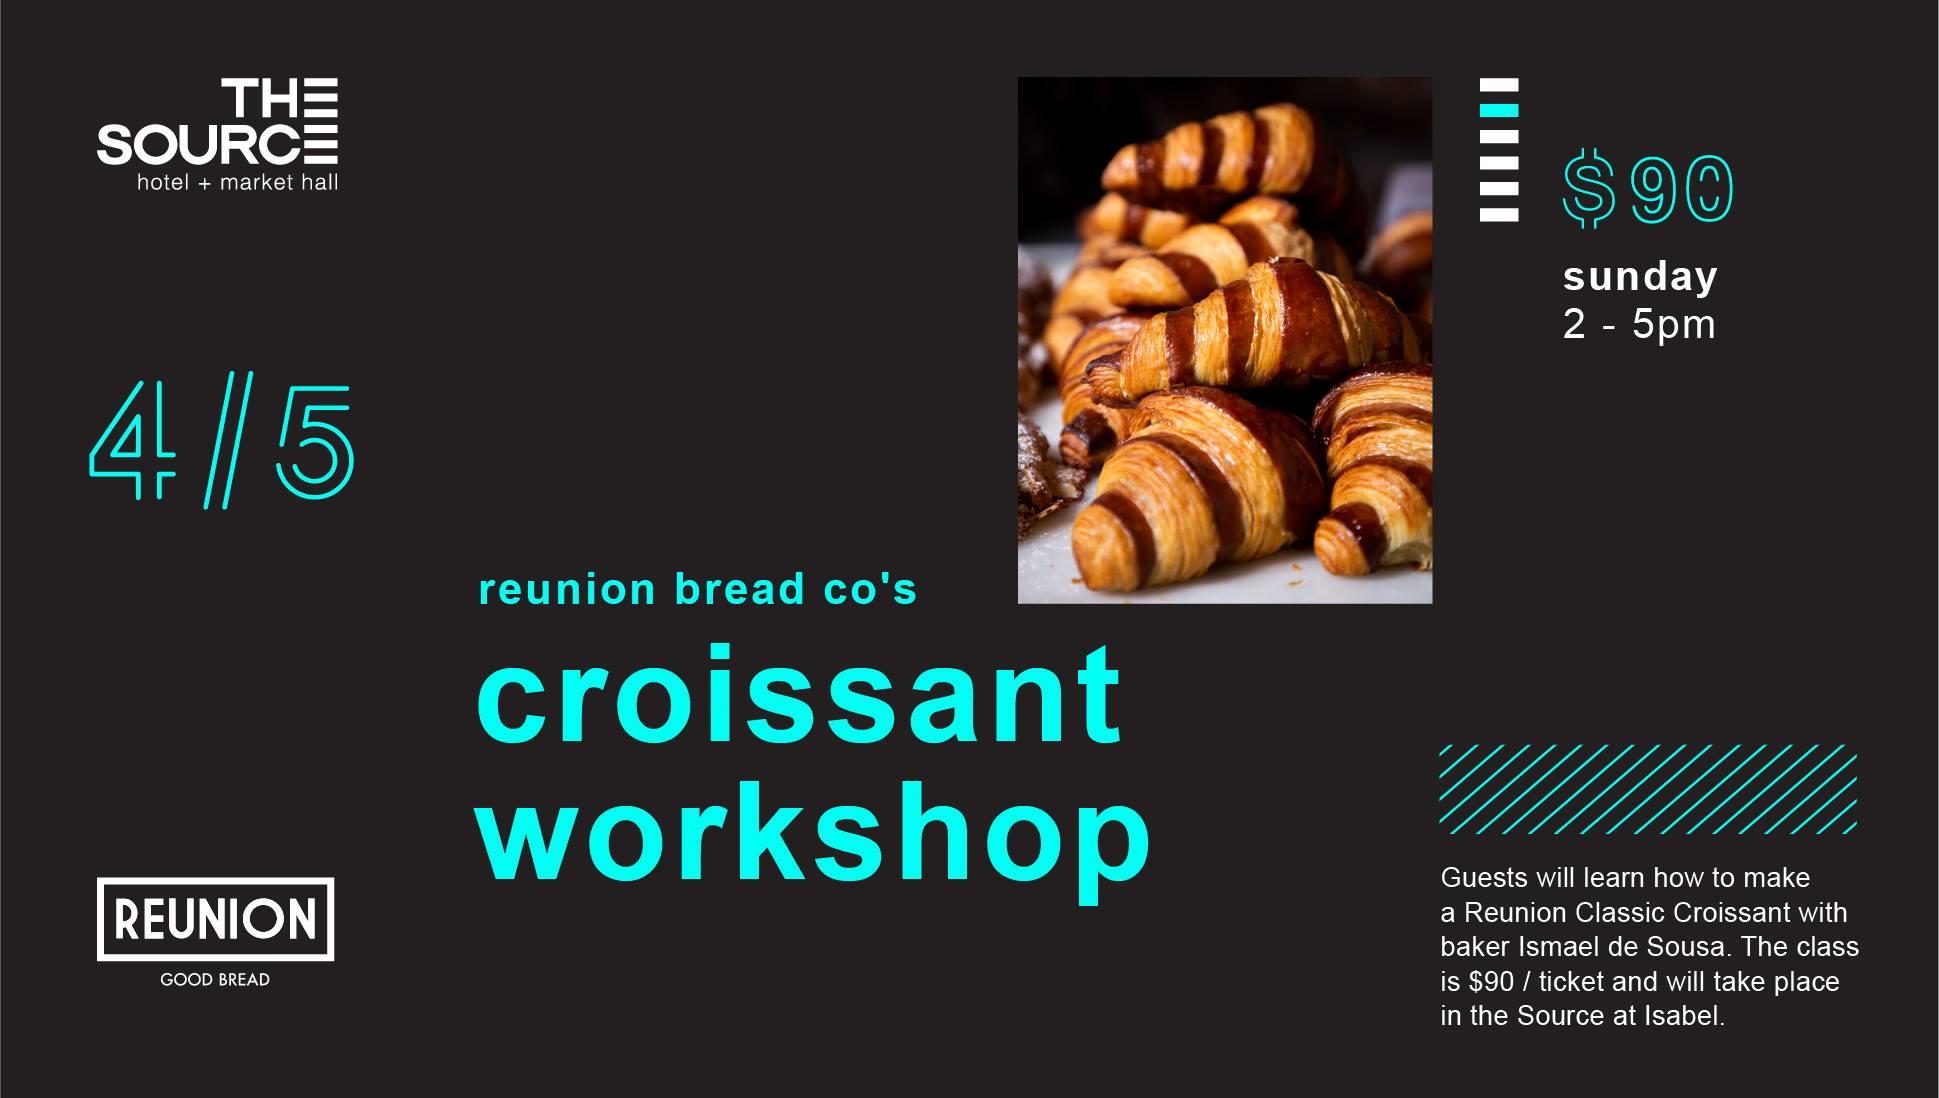 Reunion Bread Co.'s Croissant Workshop